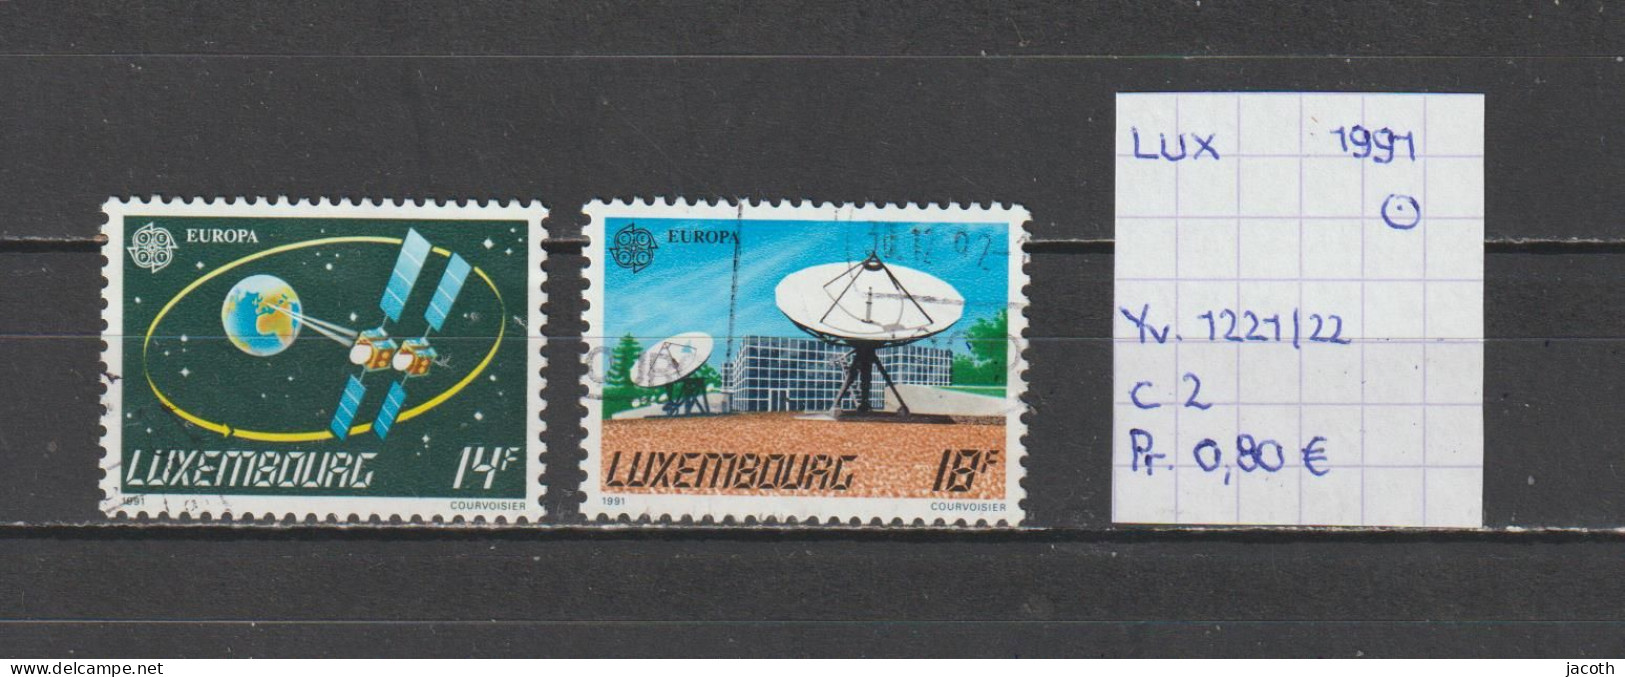 (TJ) Luxembourg 1991 - YT 1221/22 (gest./obl./used) - Gebruikt